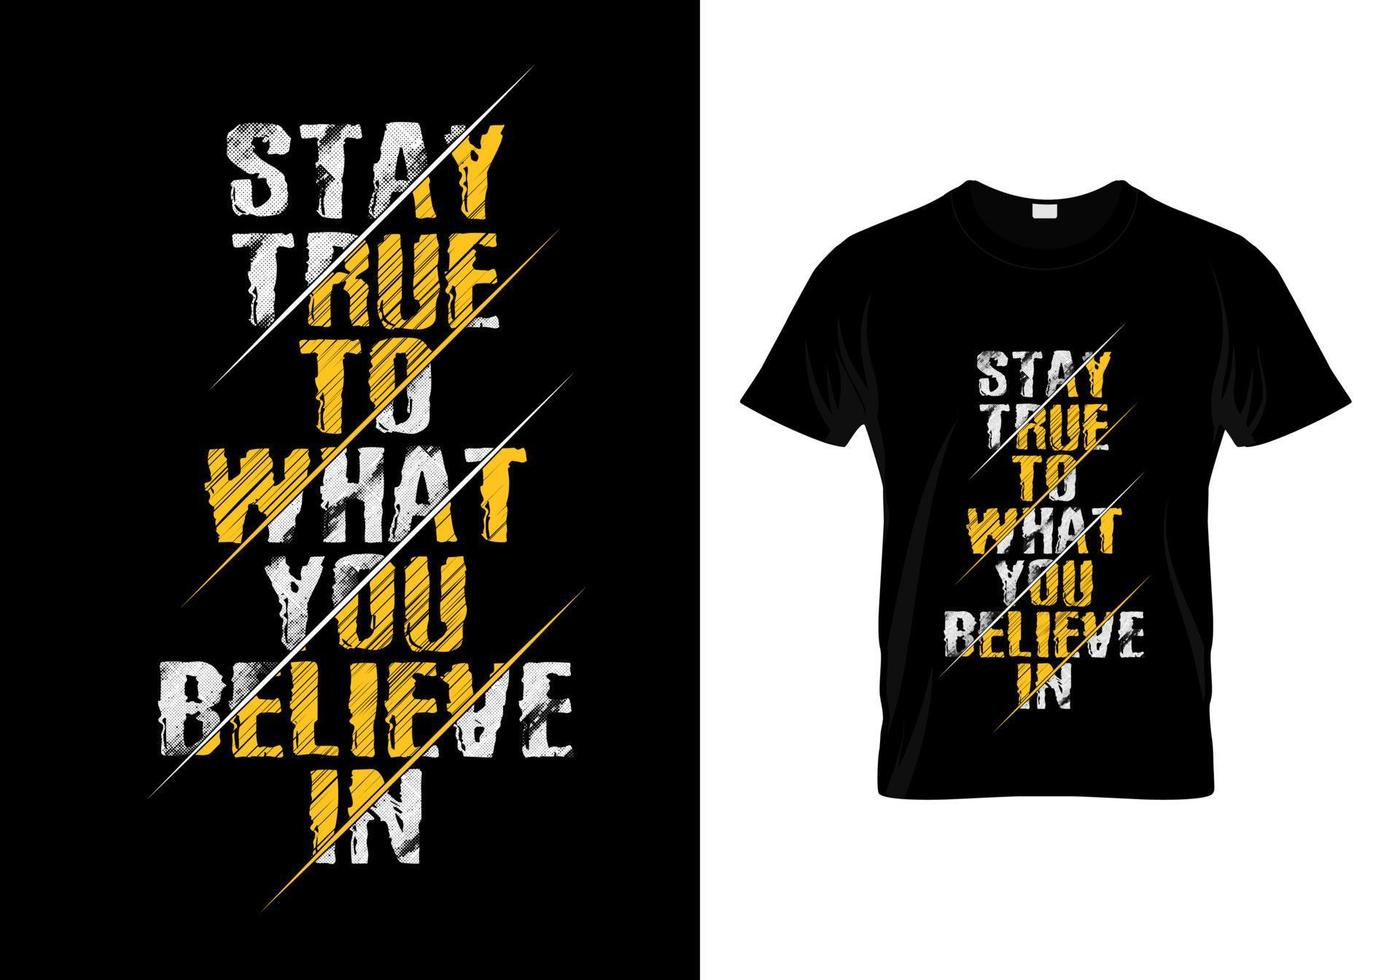 håll dig trogen vad du tror på typografi t-shirtdesign vektor